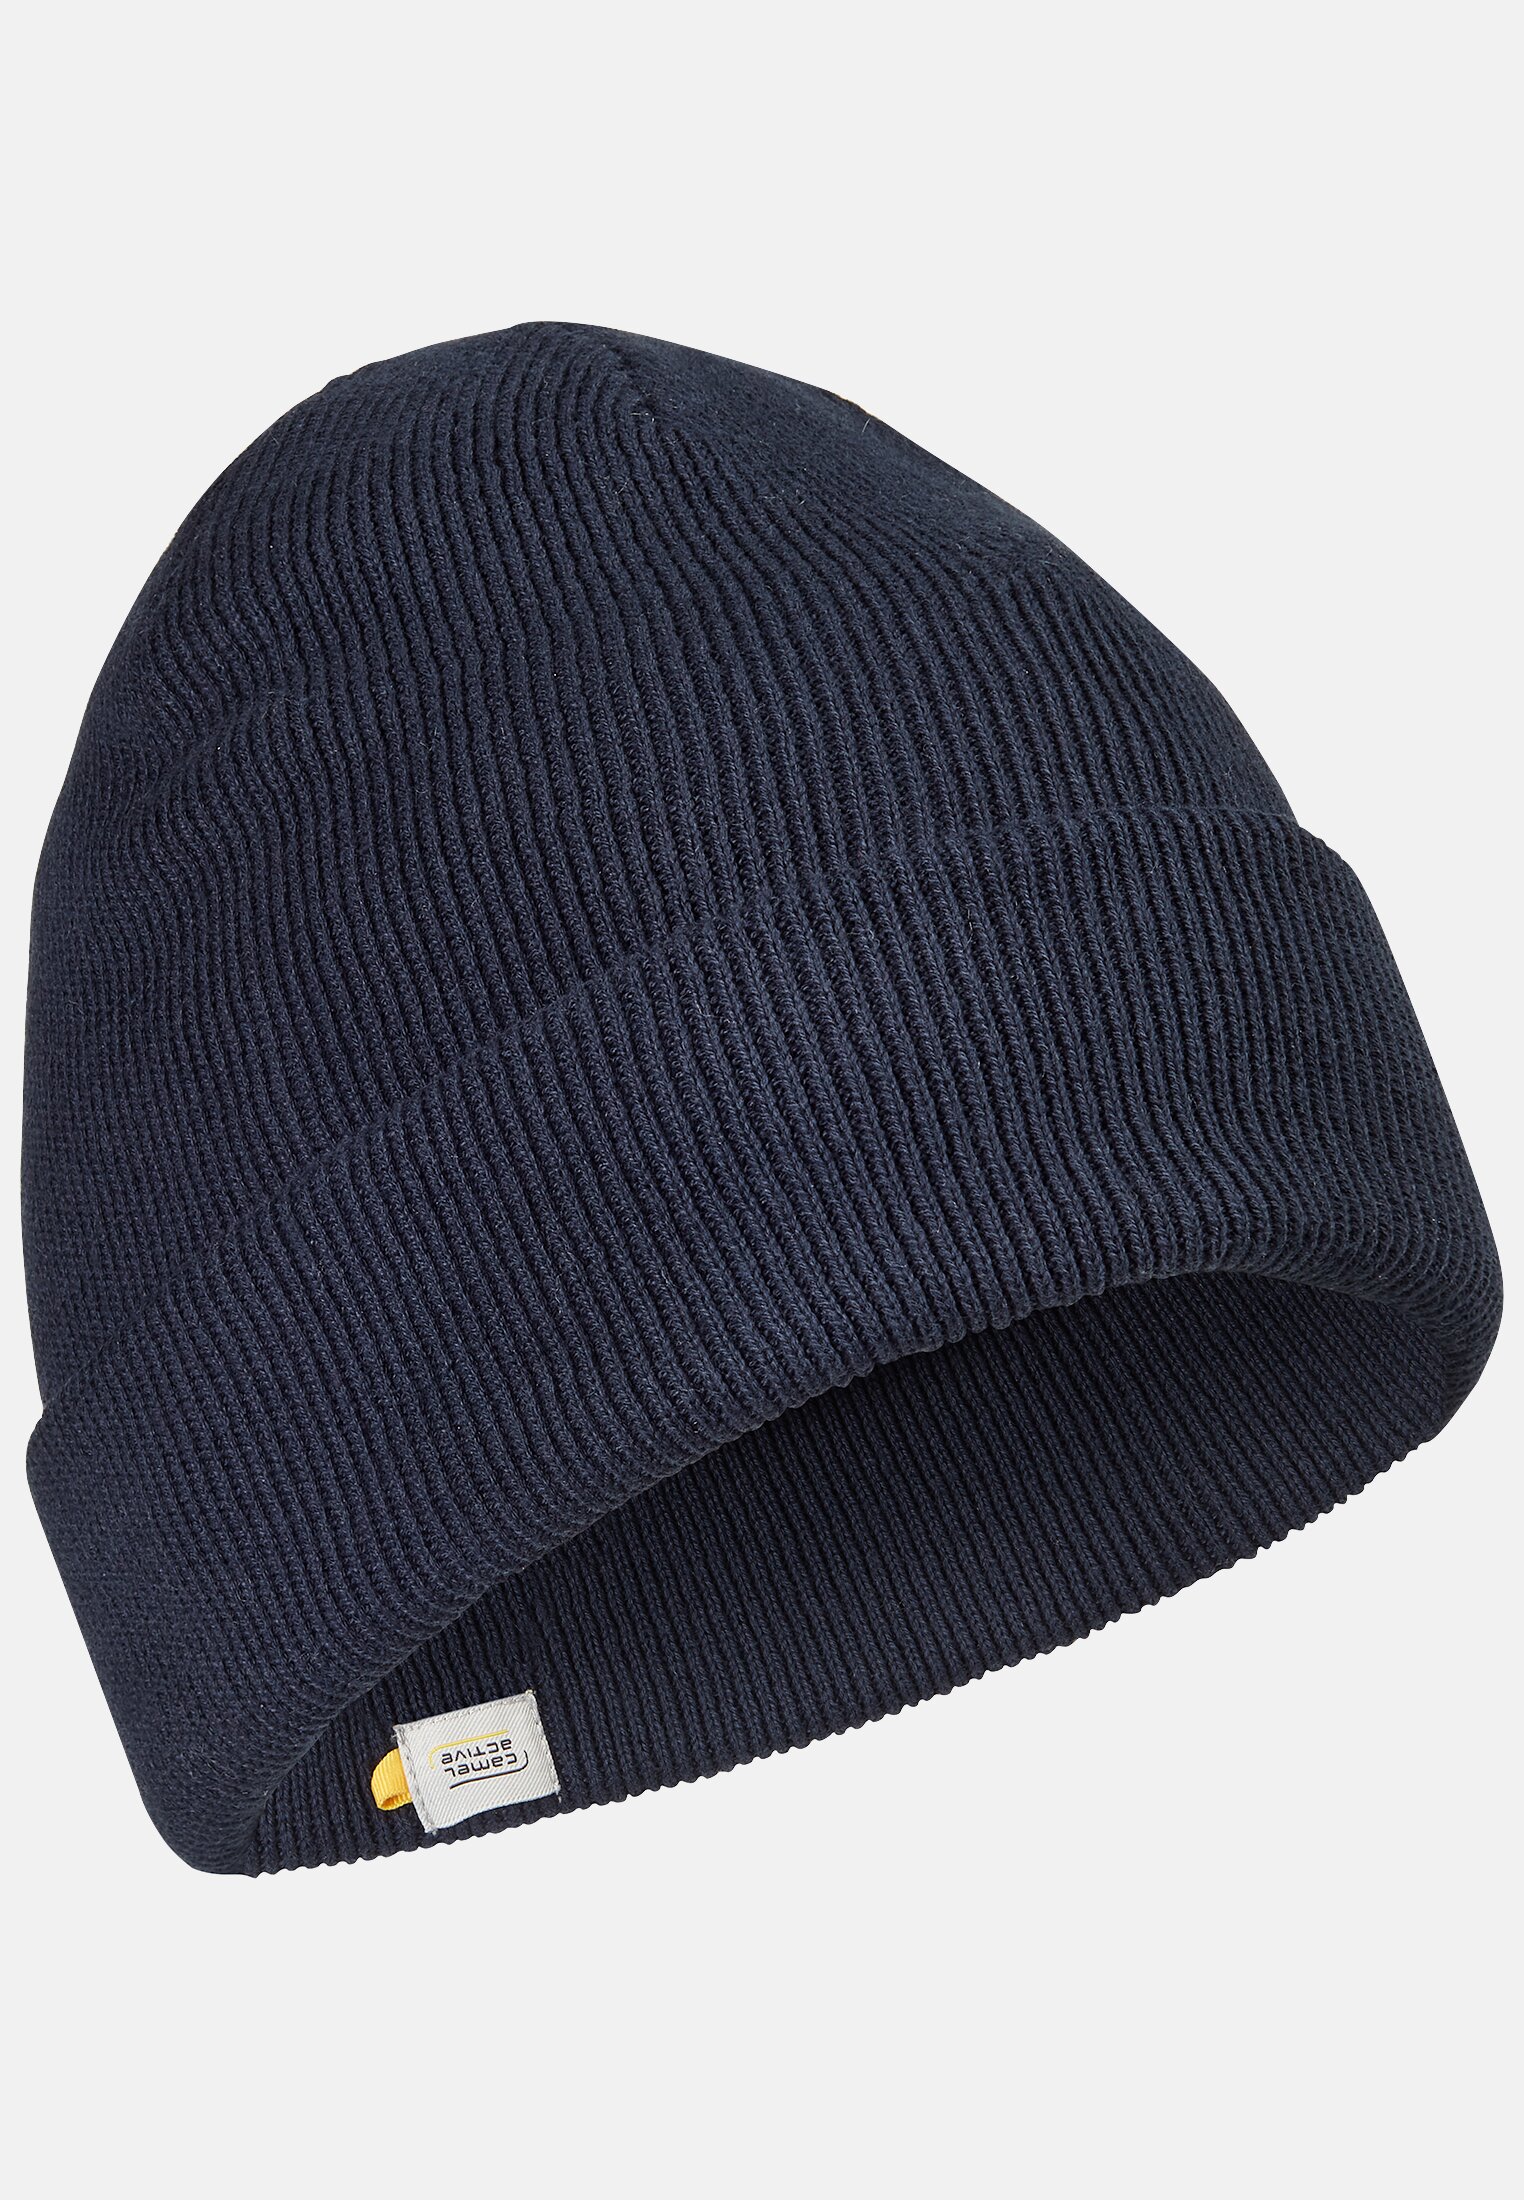 Caps u0026 Hats